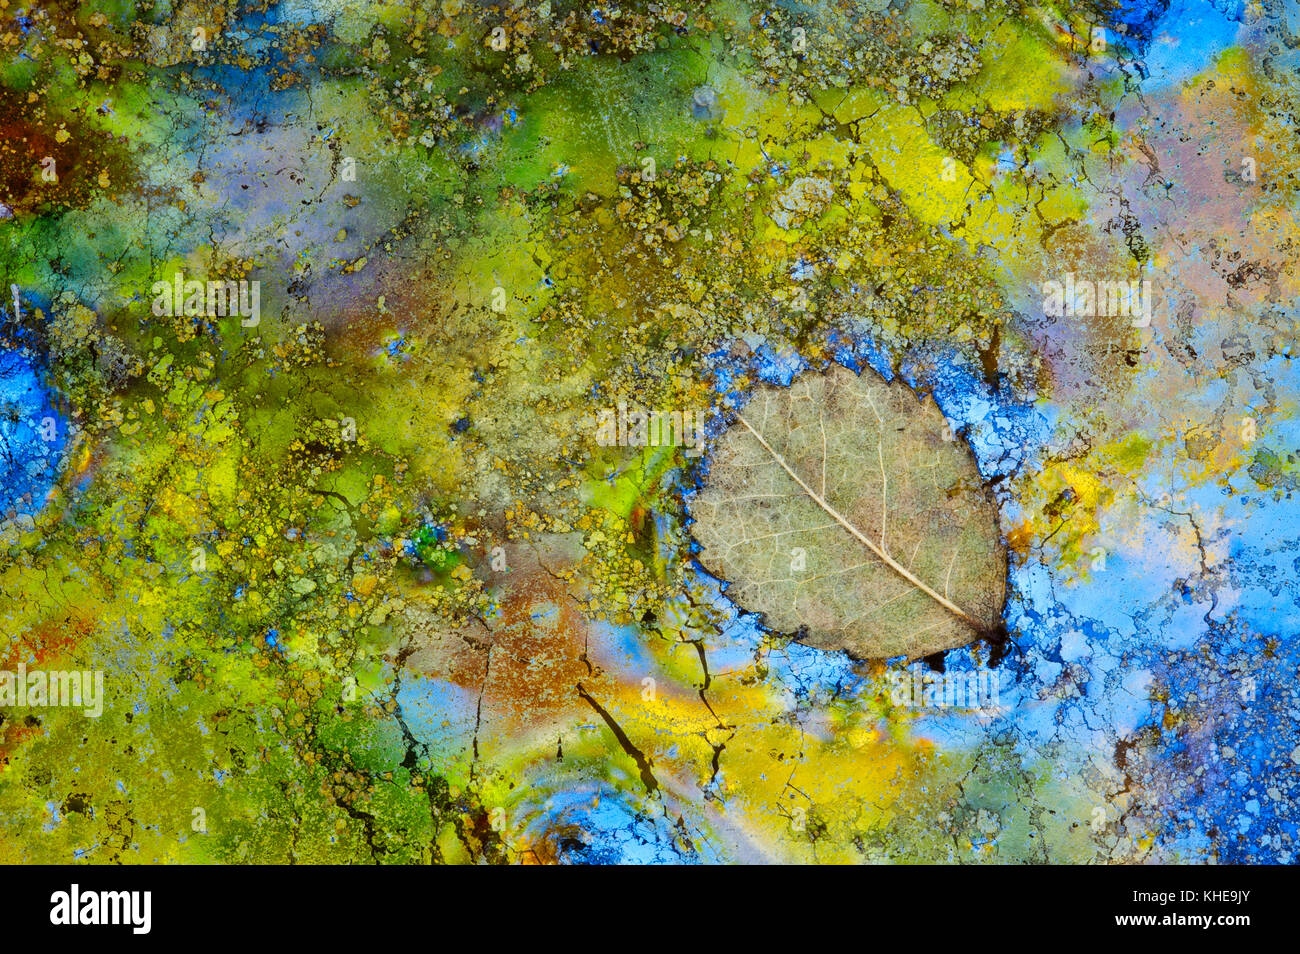 Un cadre coloré, dynamique, des bactéries du fer (Leptothrix discophora) entoure une feuille tombée dans ce local étang vernal Banque D'Images